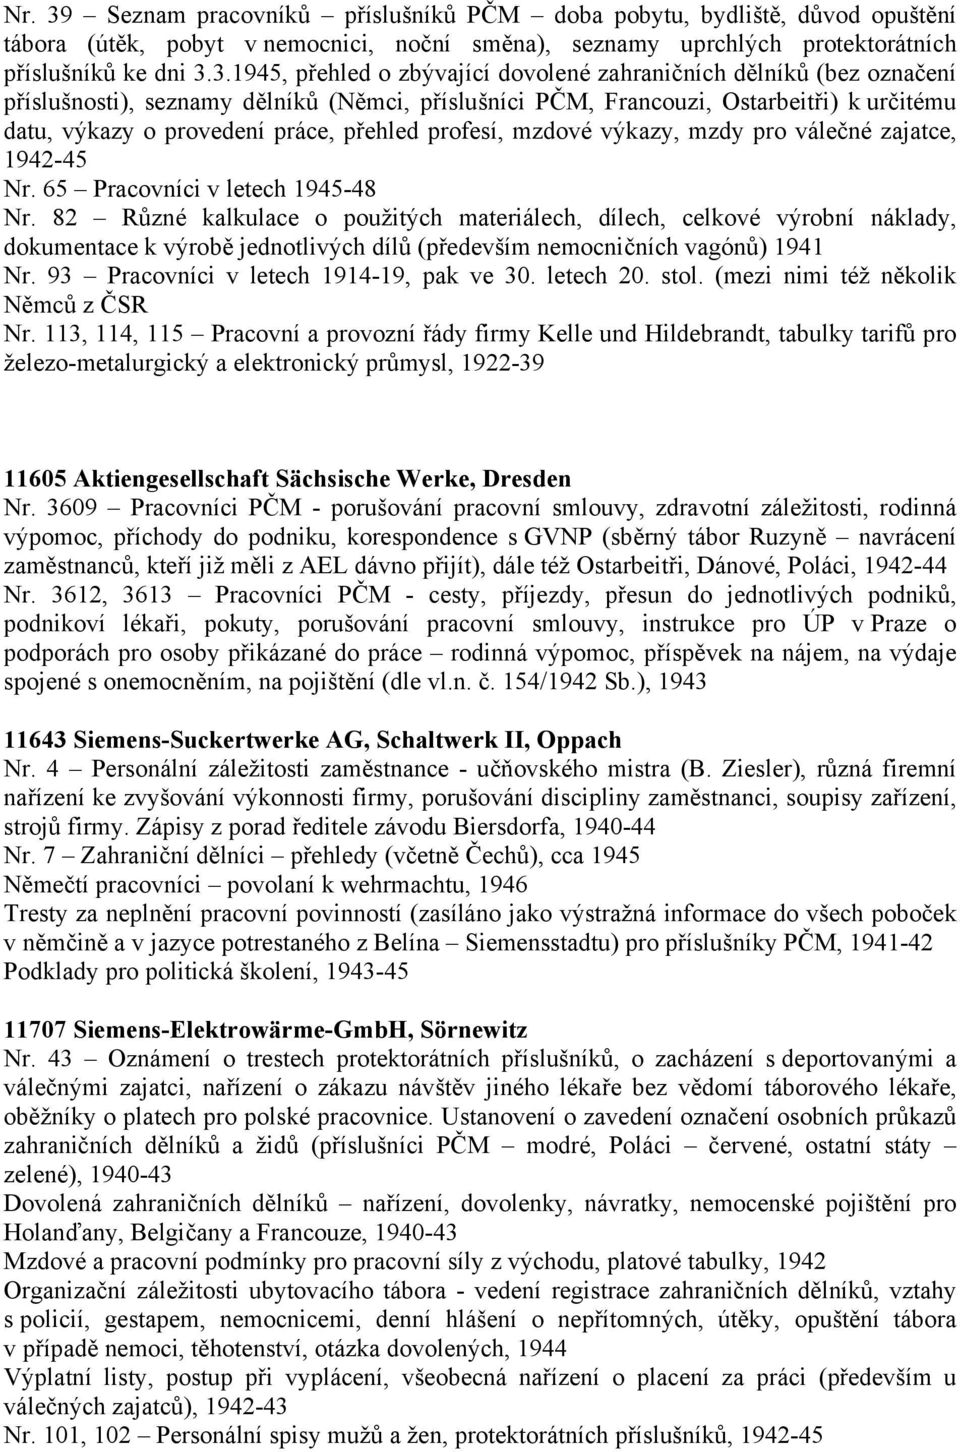 3.1945, přehled o zbývající dovolené zahraničních dělníků (bez označení příslušnosti), seznamy dělníků (Němci, příslušníci PČM, Francouzi, Ostarbeitři) k určitému datu, výkazy o provedení práce,